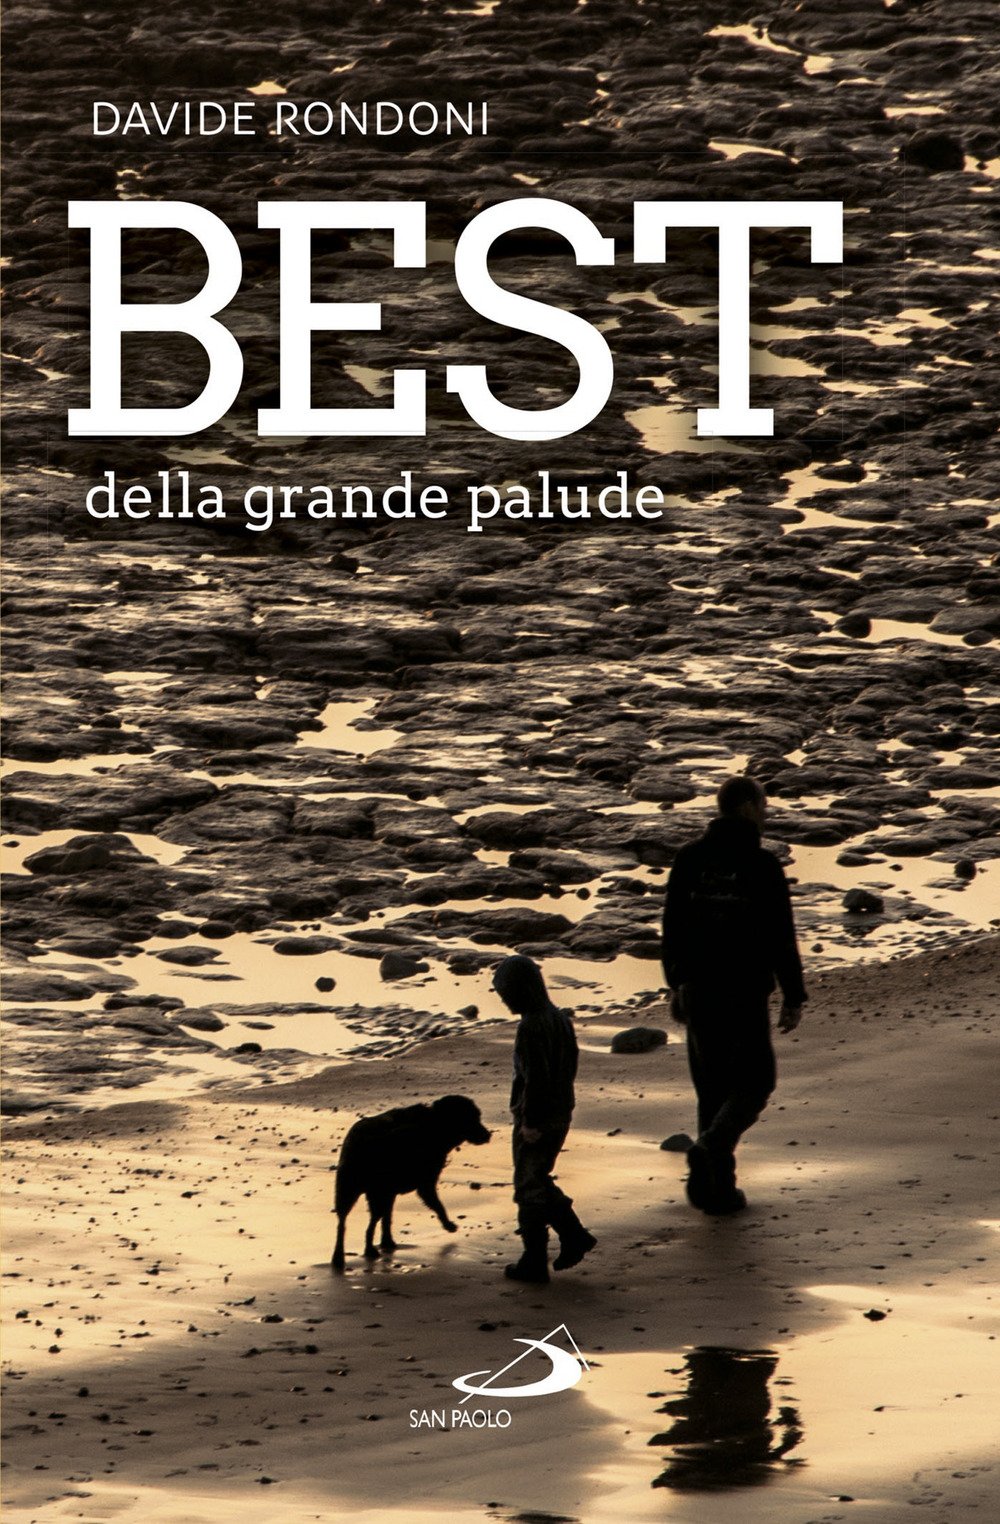 Uomo, bambino e cane sulla spiaggia